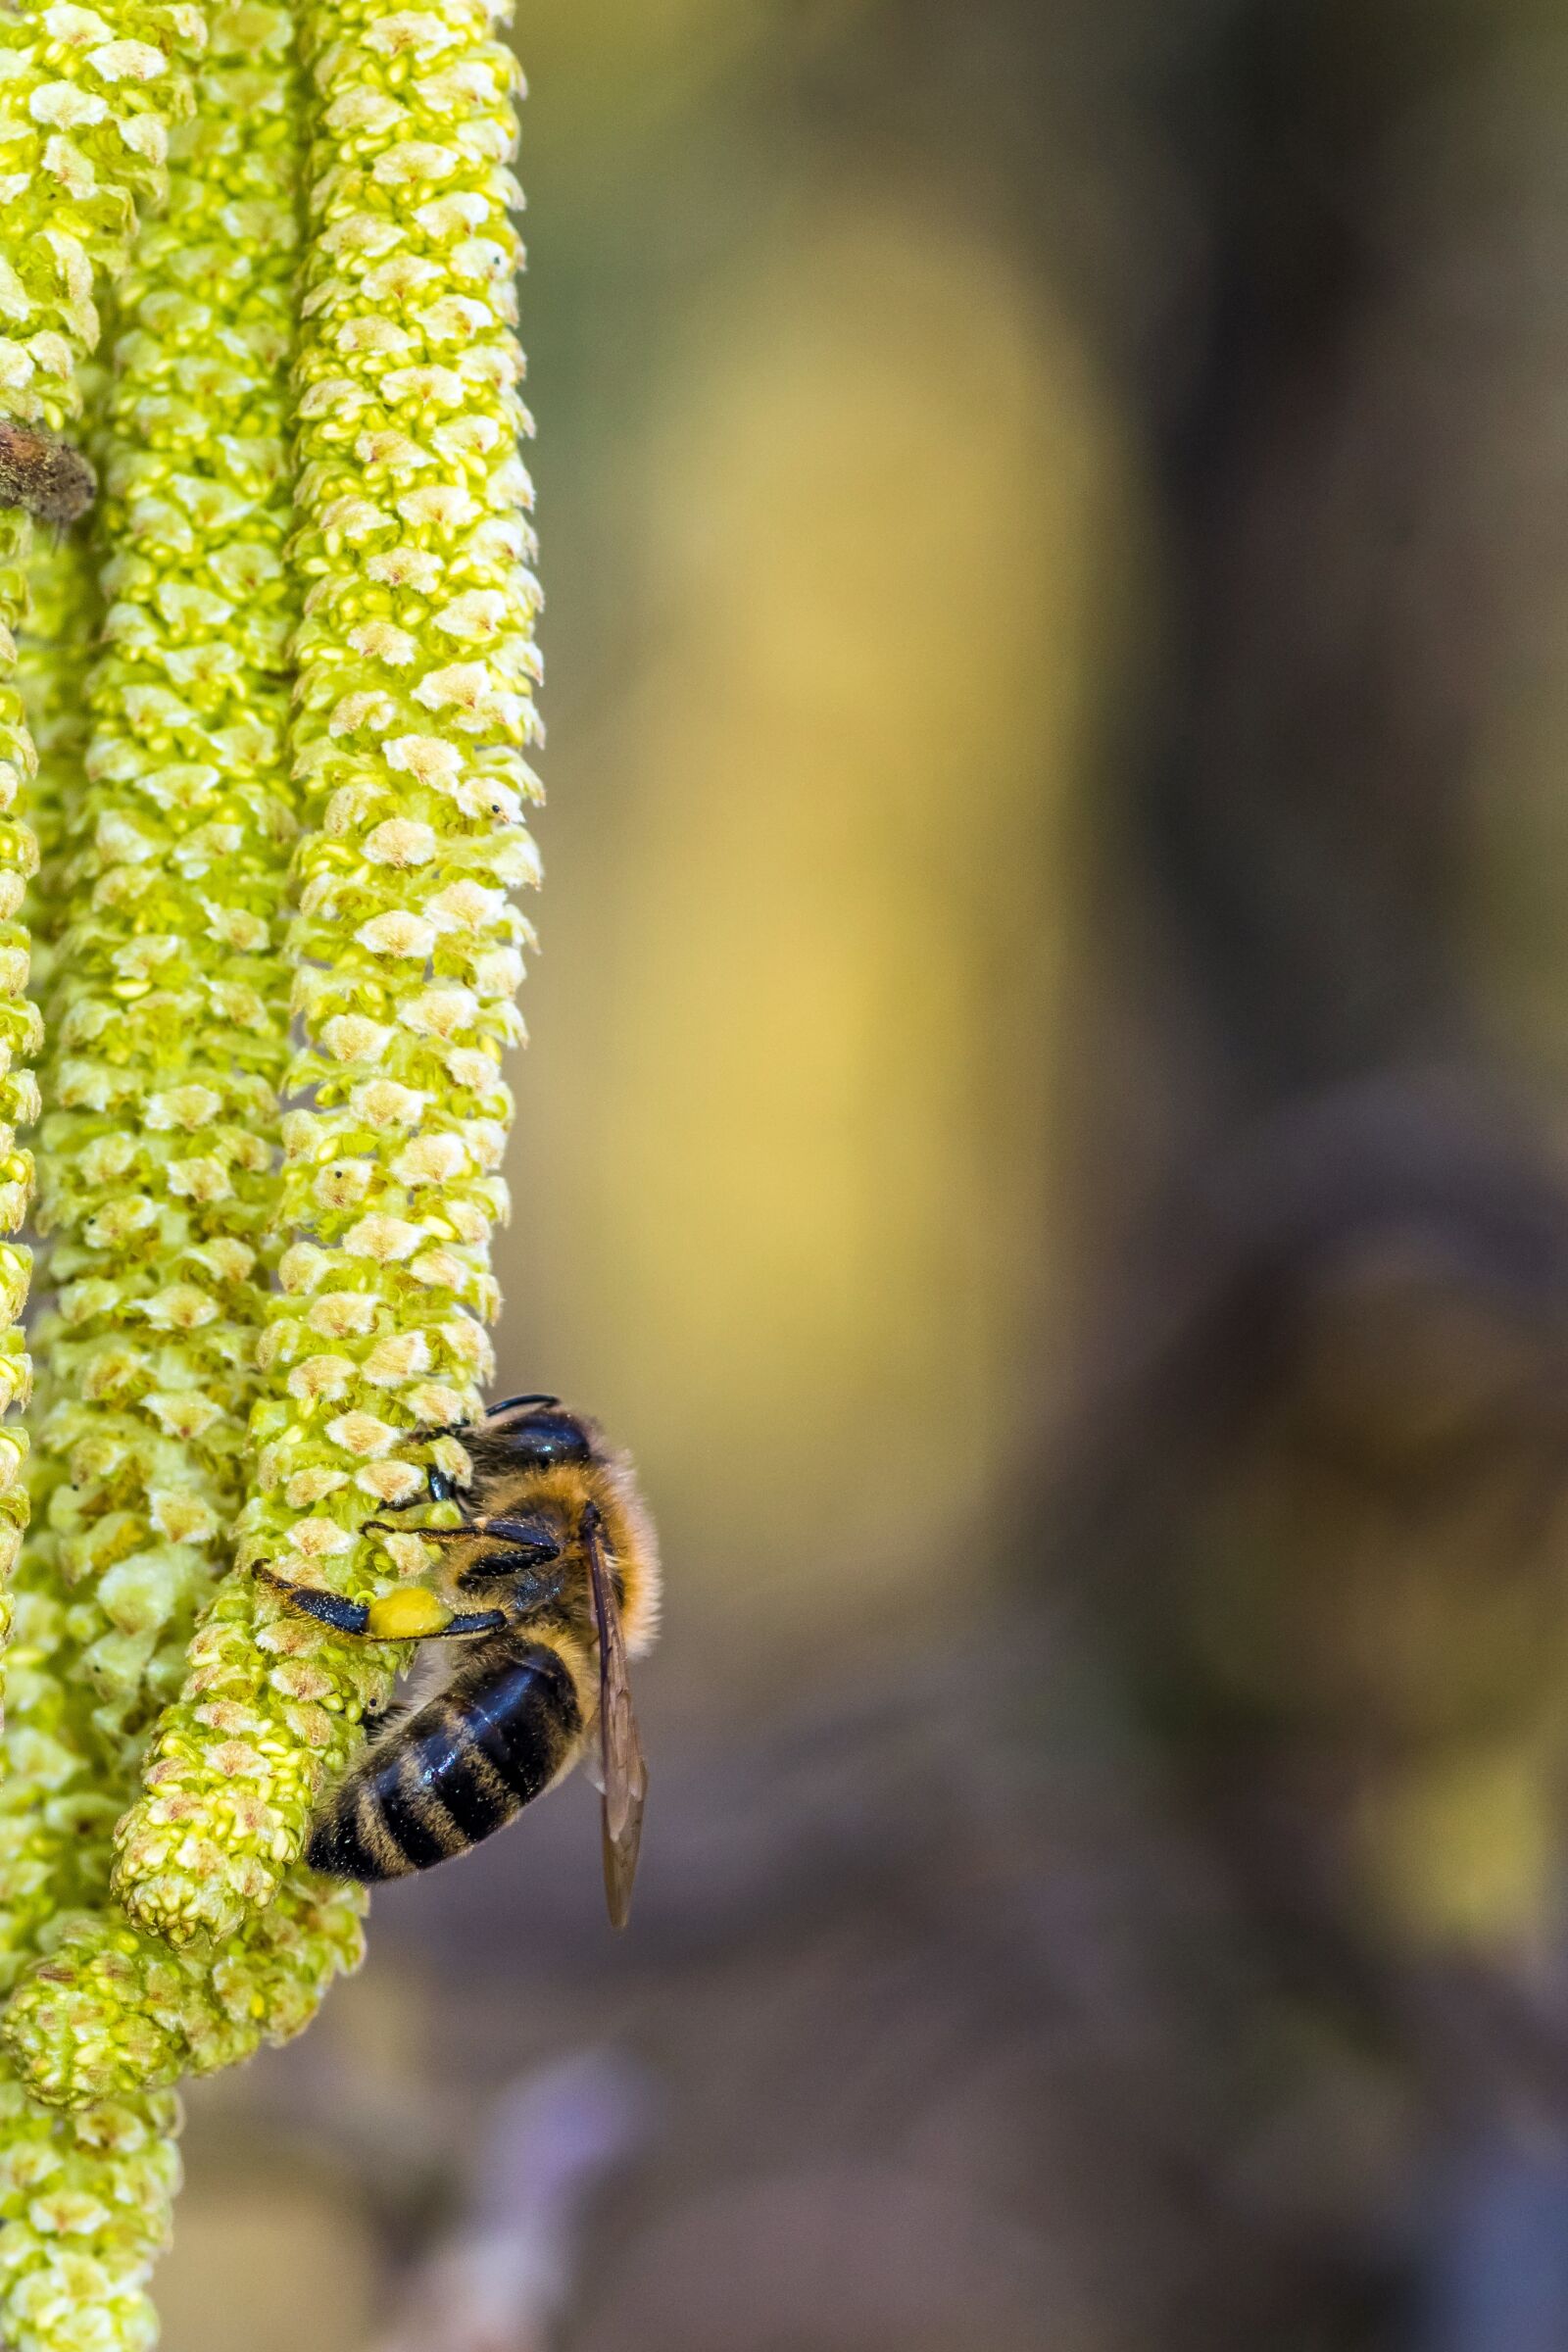 Pentax smc D-FA 100mm F2.8 Macro WR sample photo. Bee miodna, nectar, honey photography